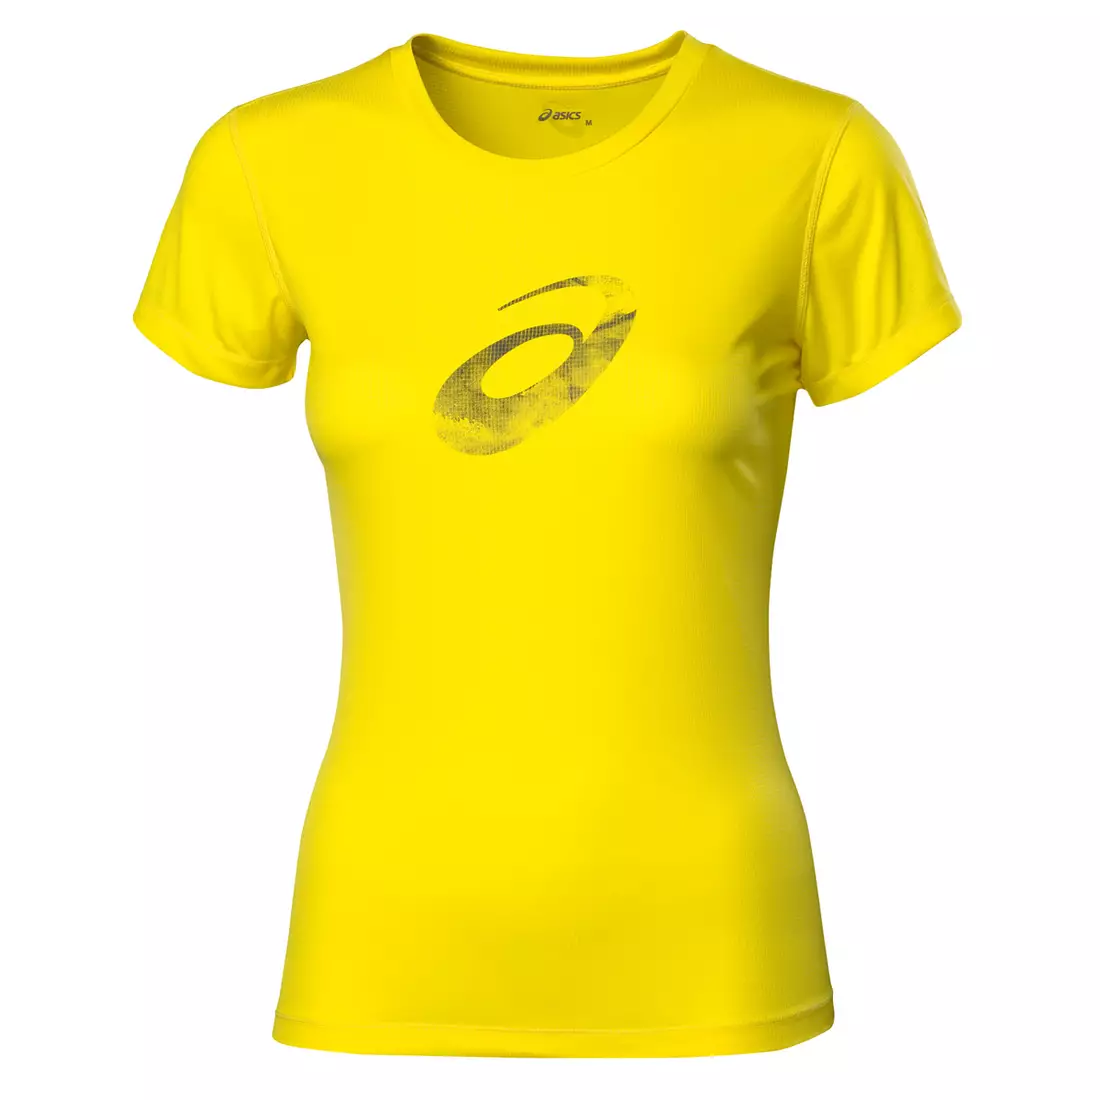 ASICS 110423-0343 GRAPHIC SS TOP - tricou pentru alergare damă, culoare: Galben